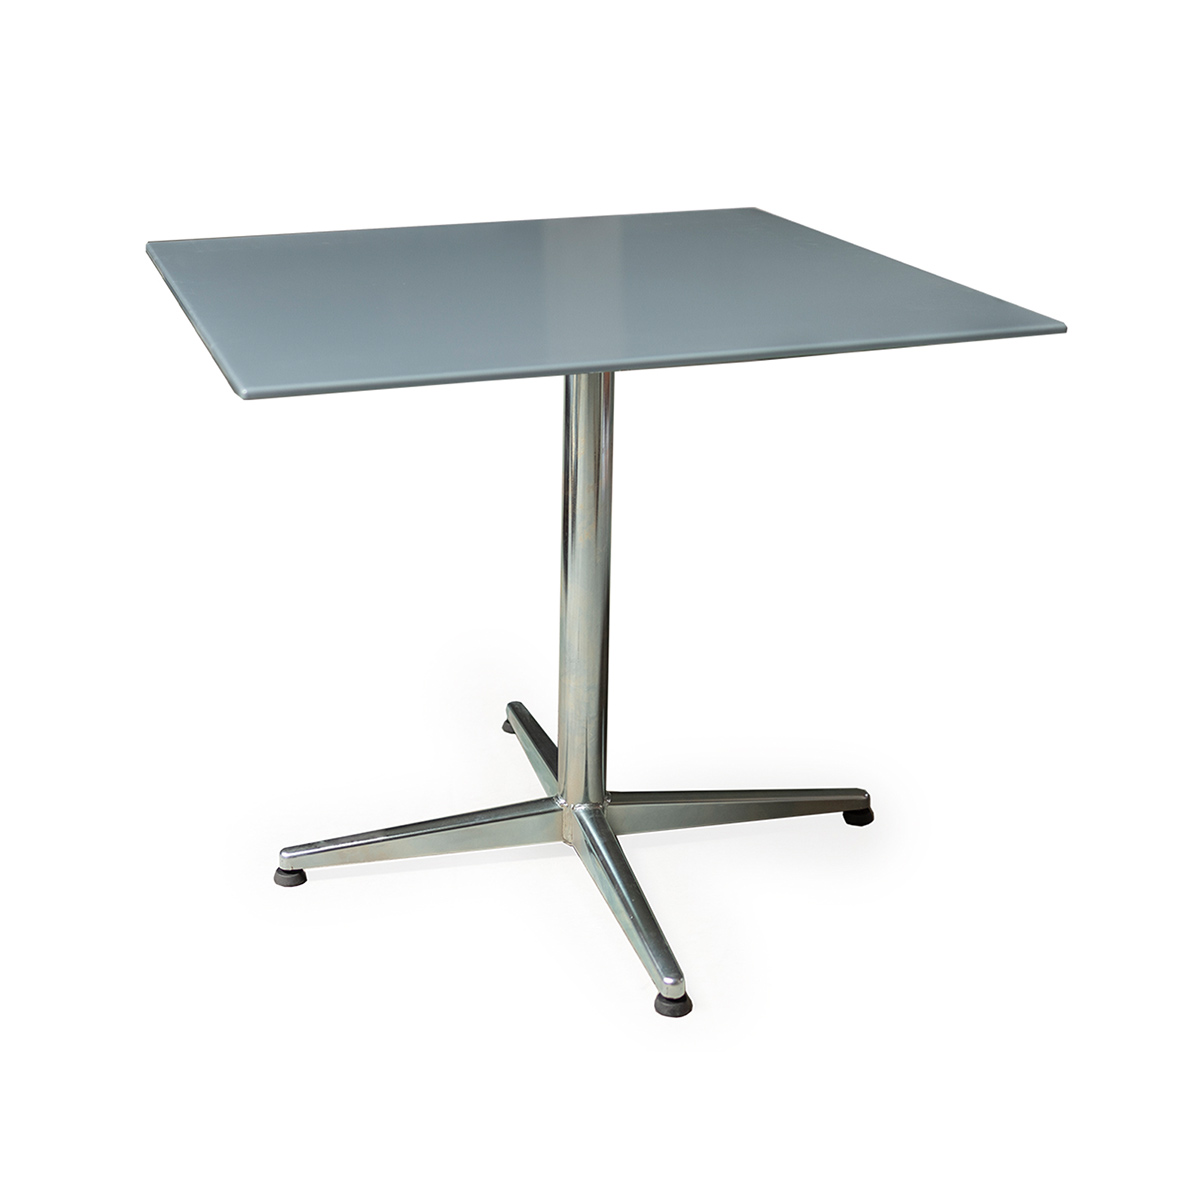 Table en PRV elegance gris 80x80